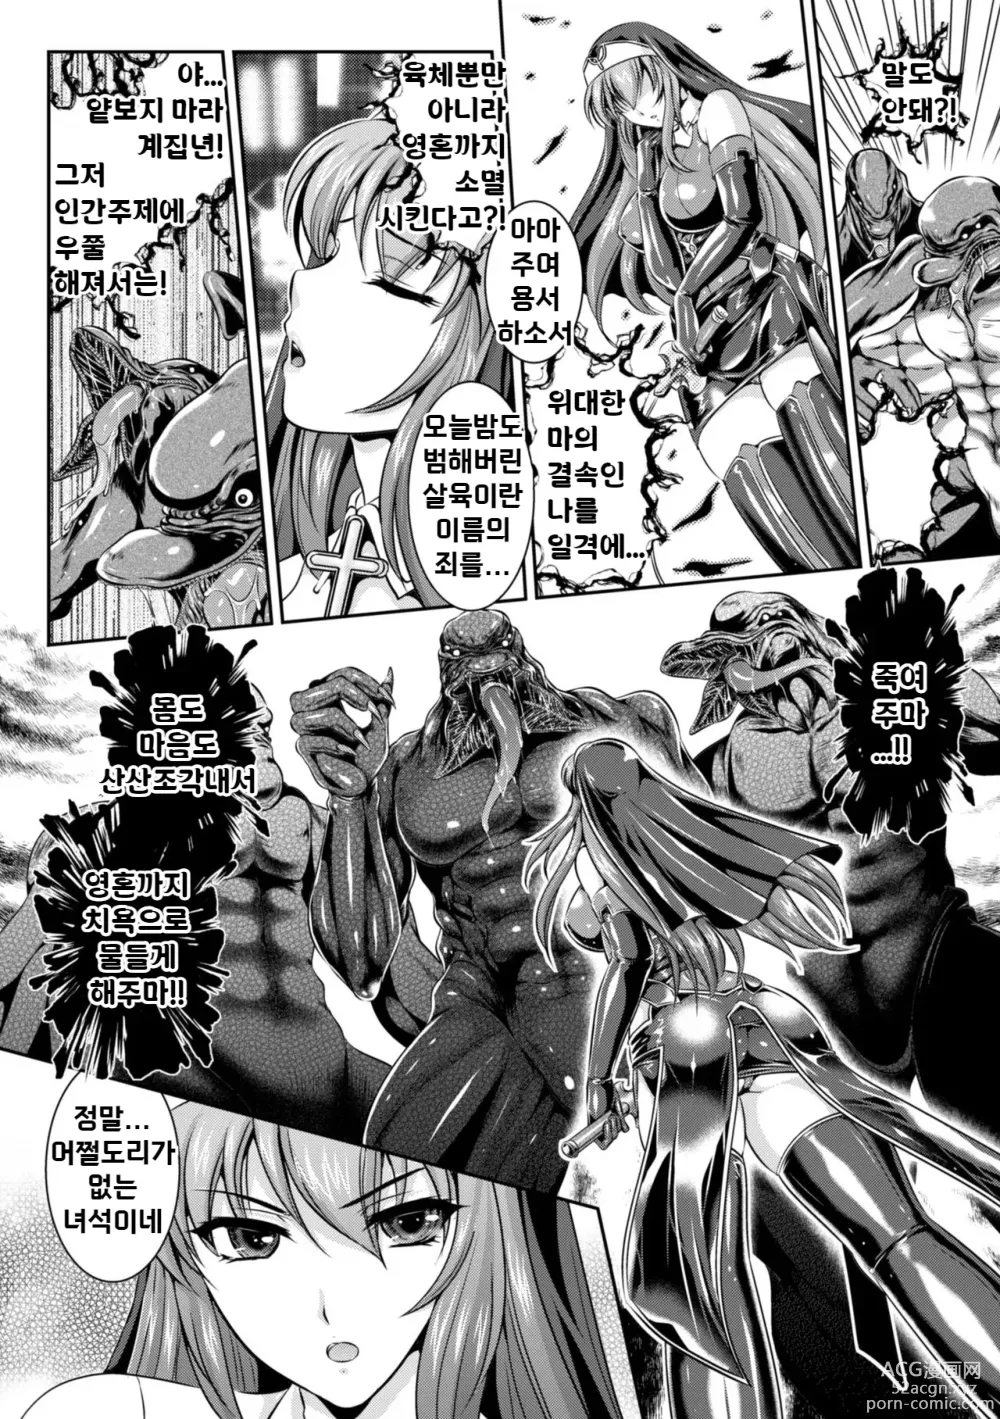 Page 9 of manga 점옥의 리제 음죄의 숙명 제1화